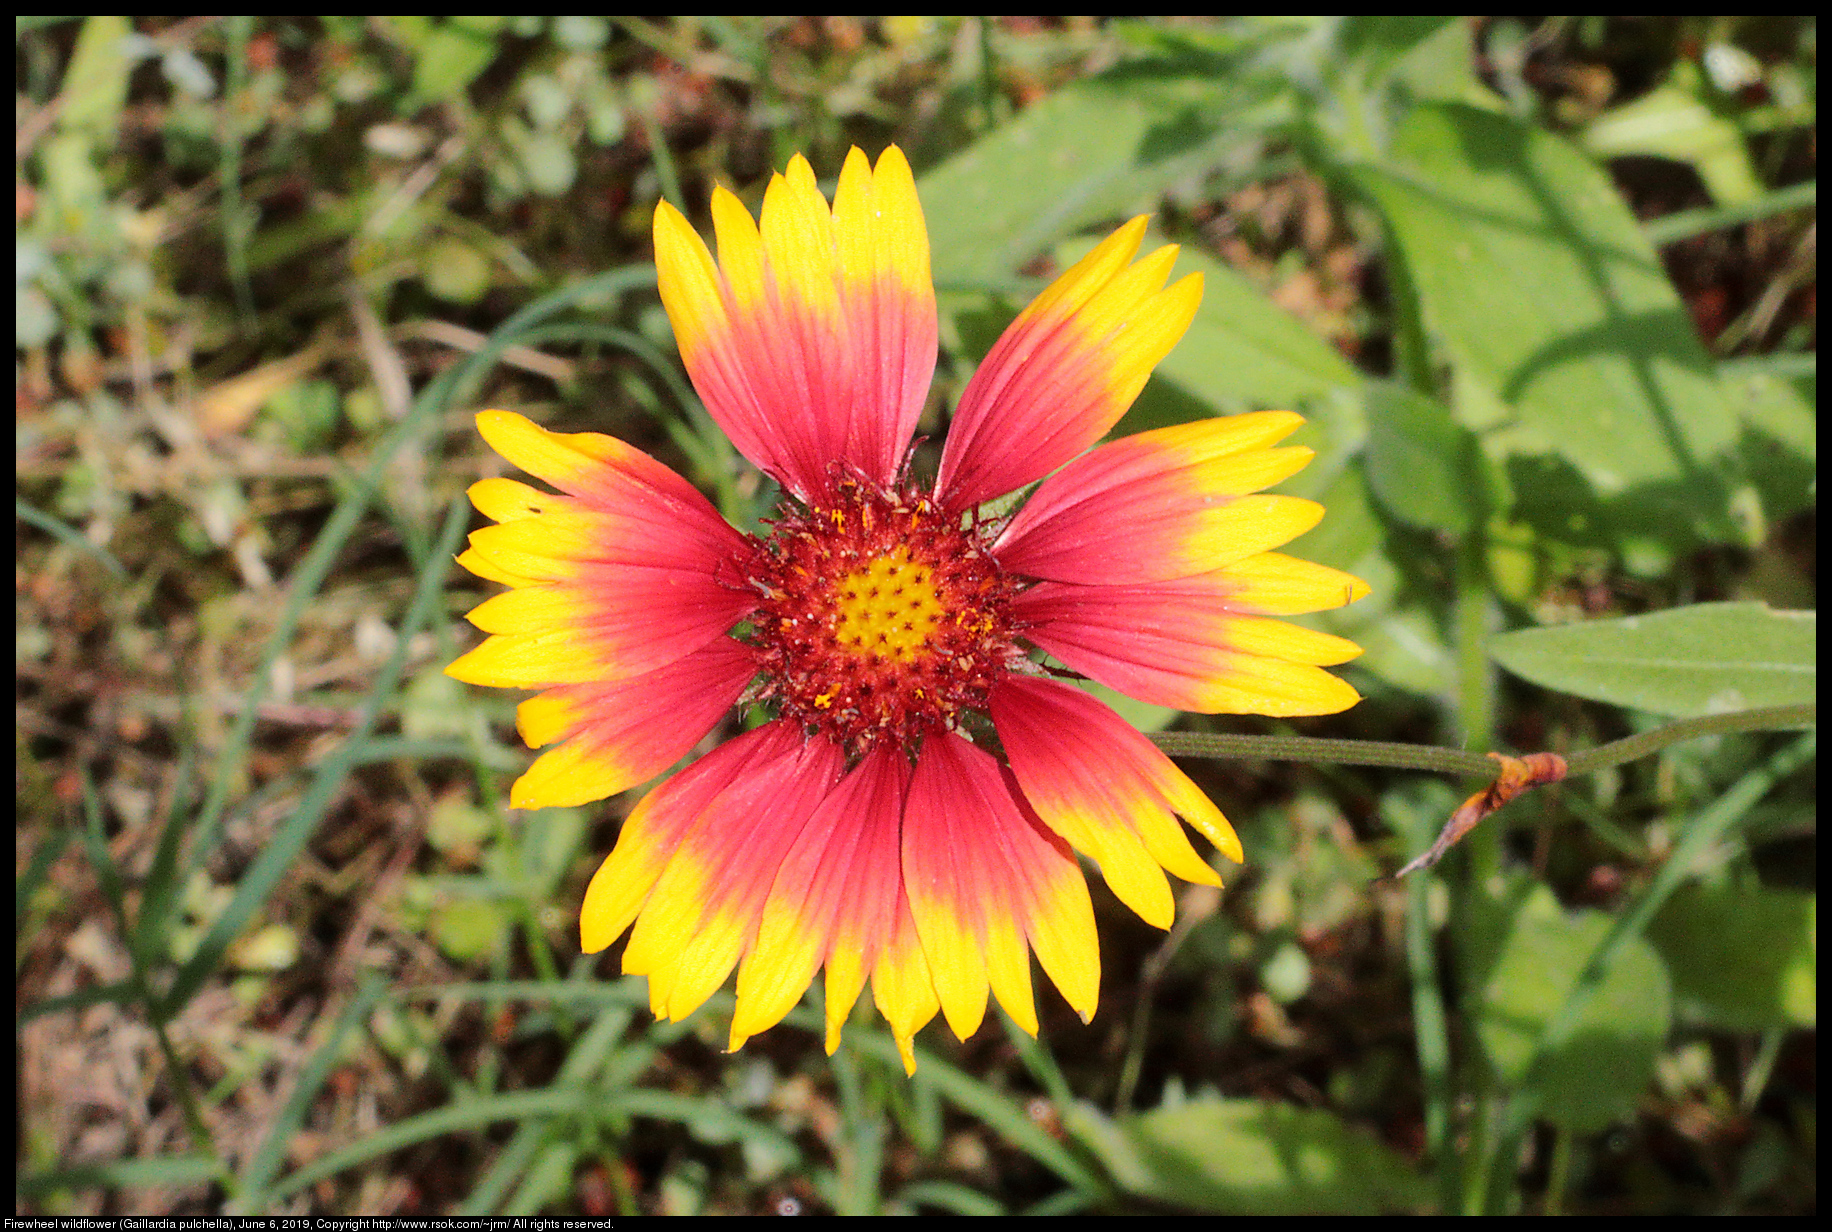 Firewheel wildflower (Gaillardia pulchella), June 6, 2019